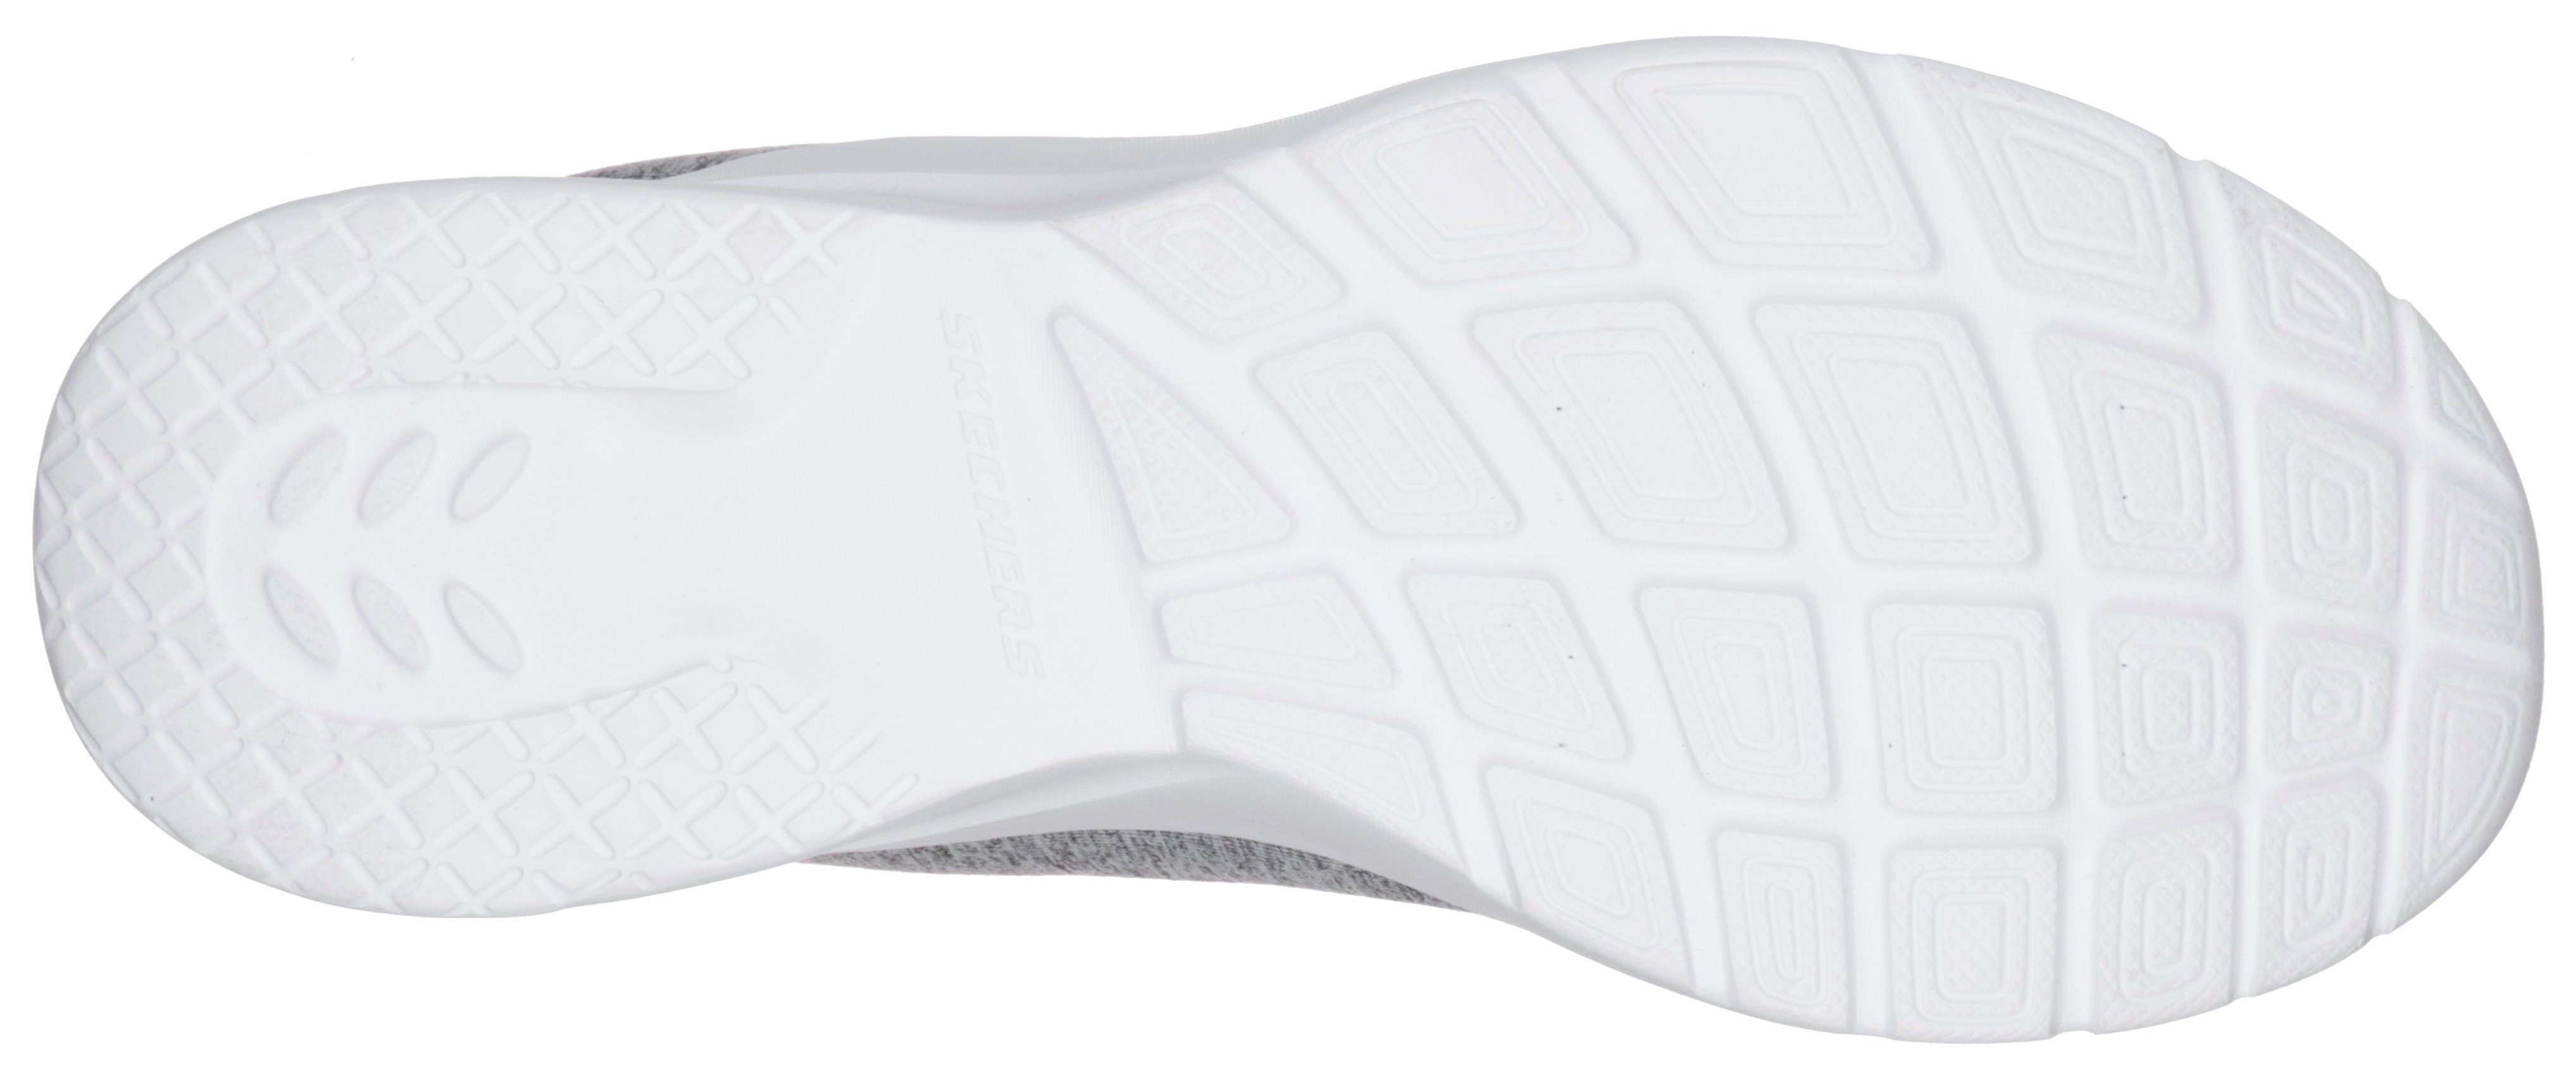 FLASH Skechers Maschinenwäsche 2.0-IN geeignet für Sneaker Slip-On A grau-mint DYNAMIGHT